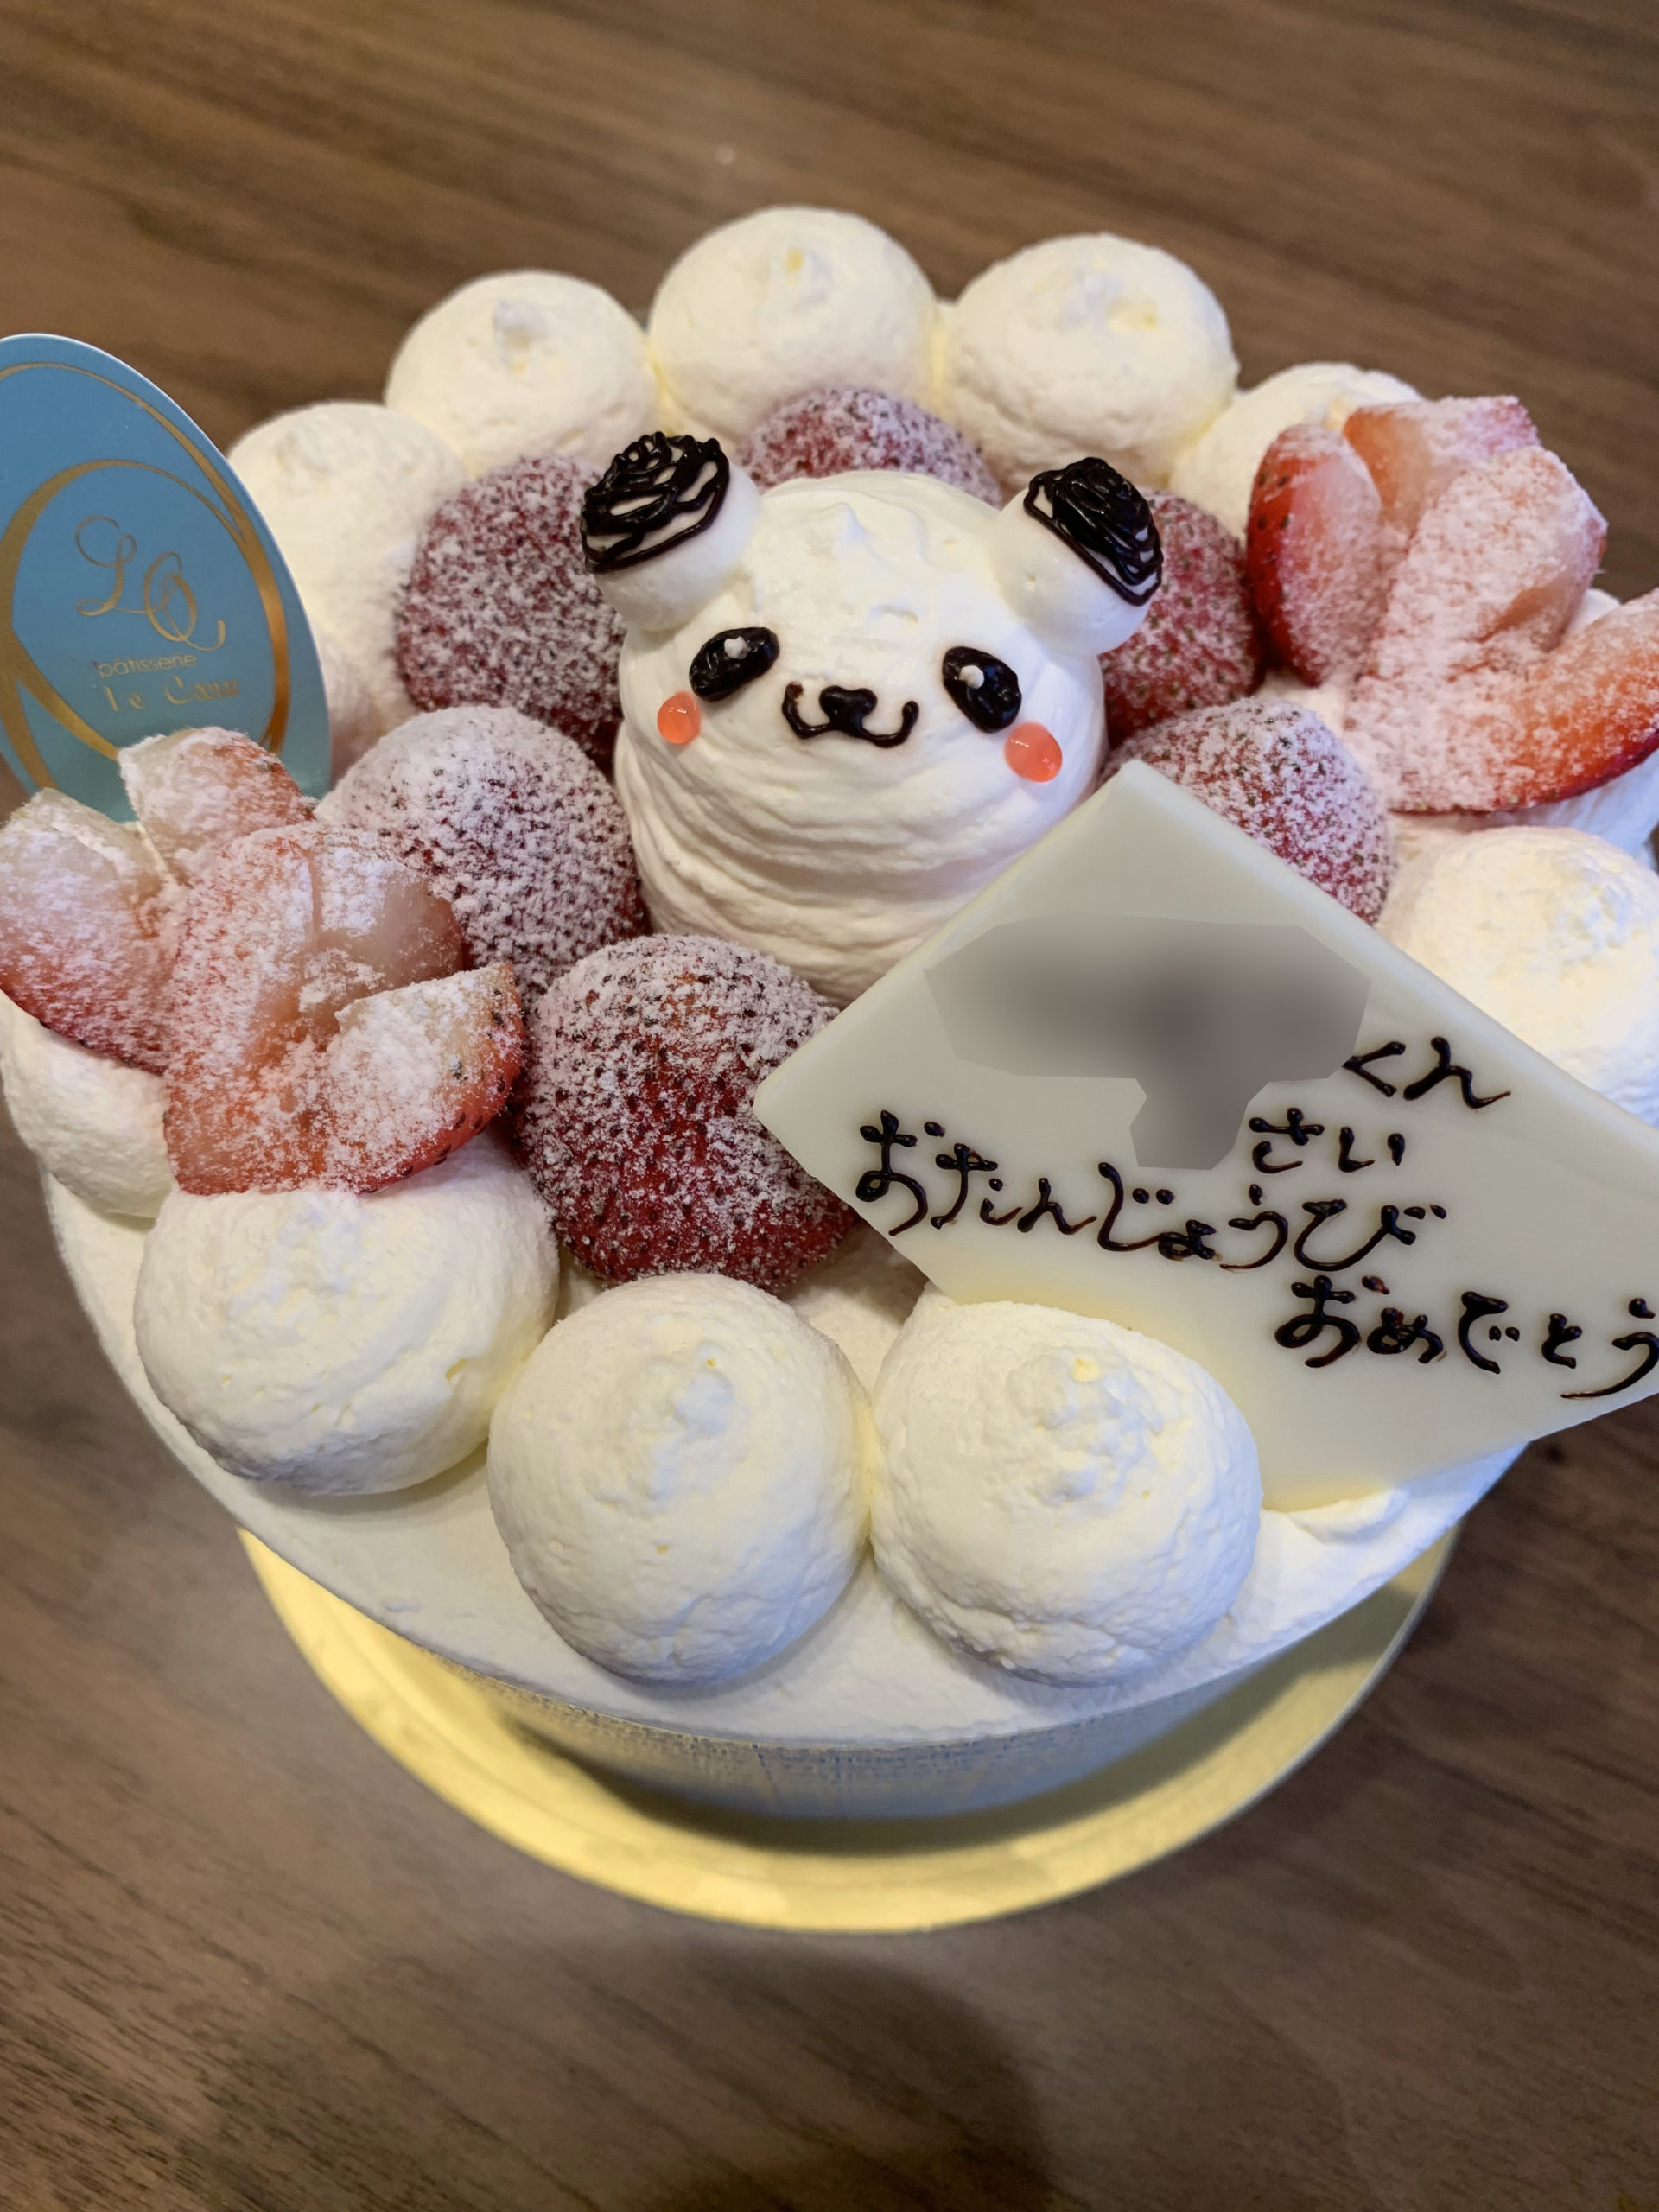 富山県ケーキ屋さん ルクールの誕生日ケーキは可愛くておすすめ 富山県のママ向け情報